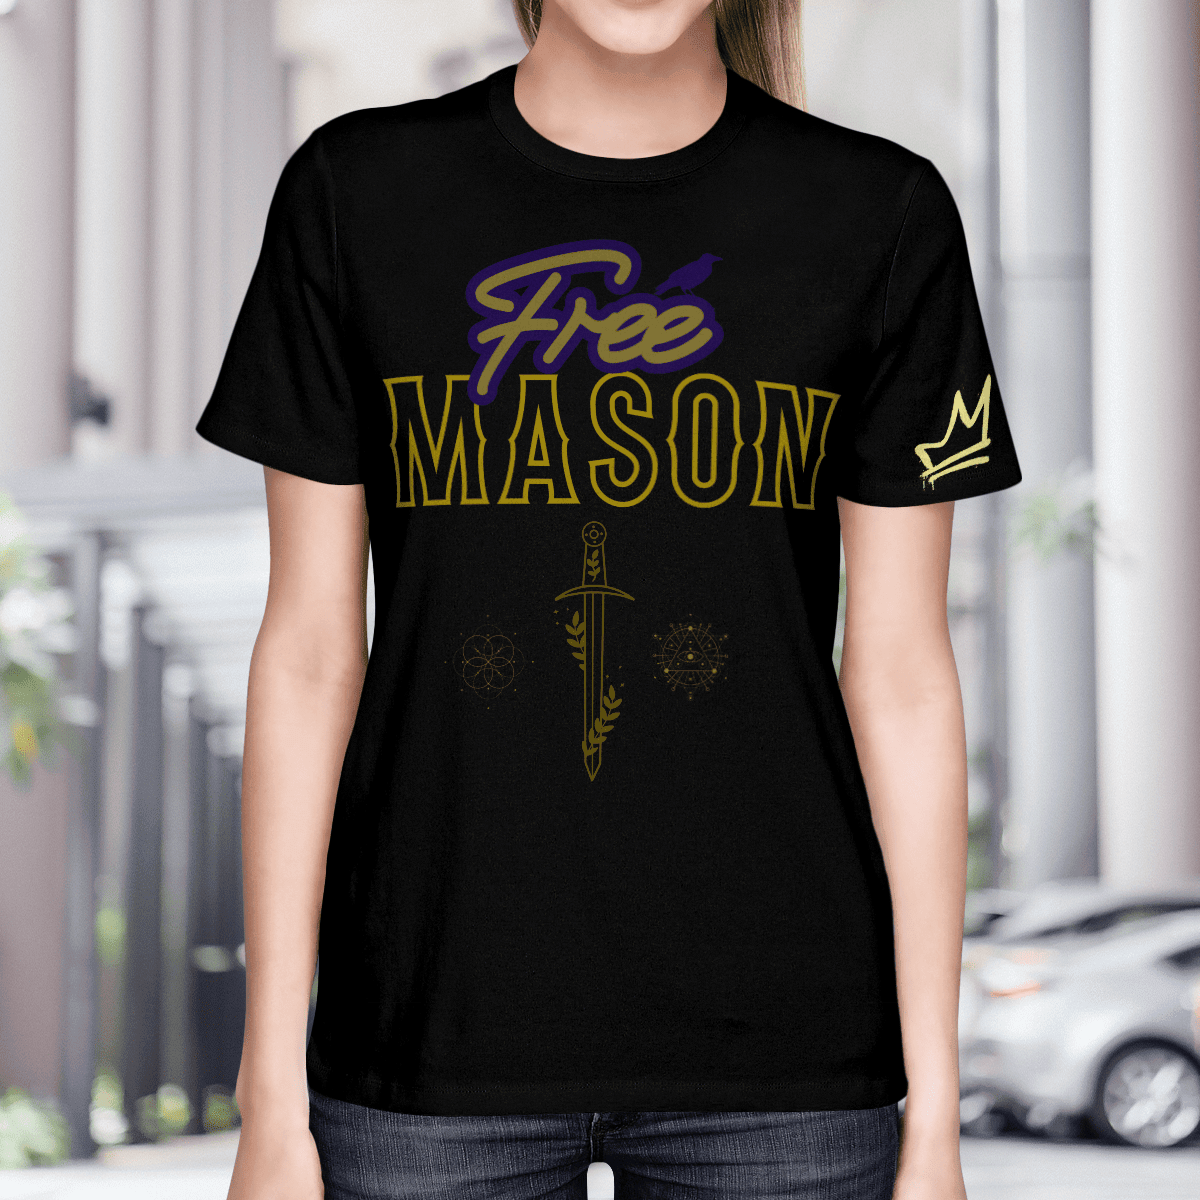 Free Mason Shirt